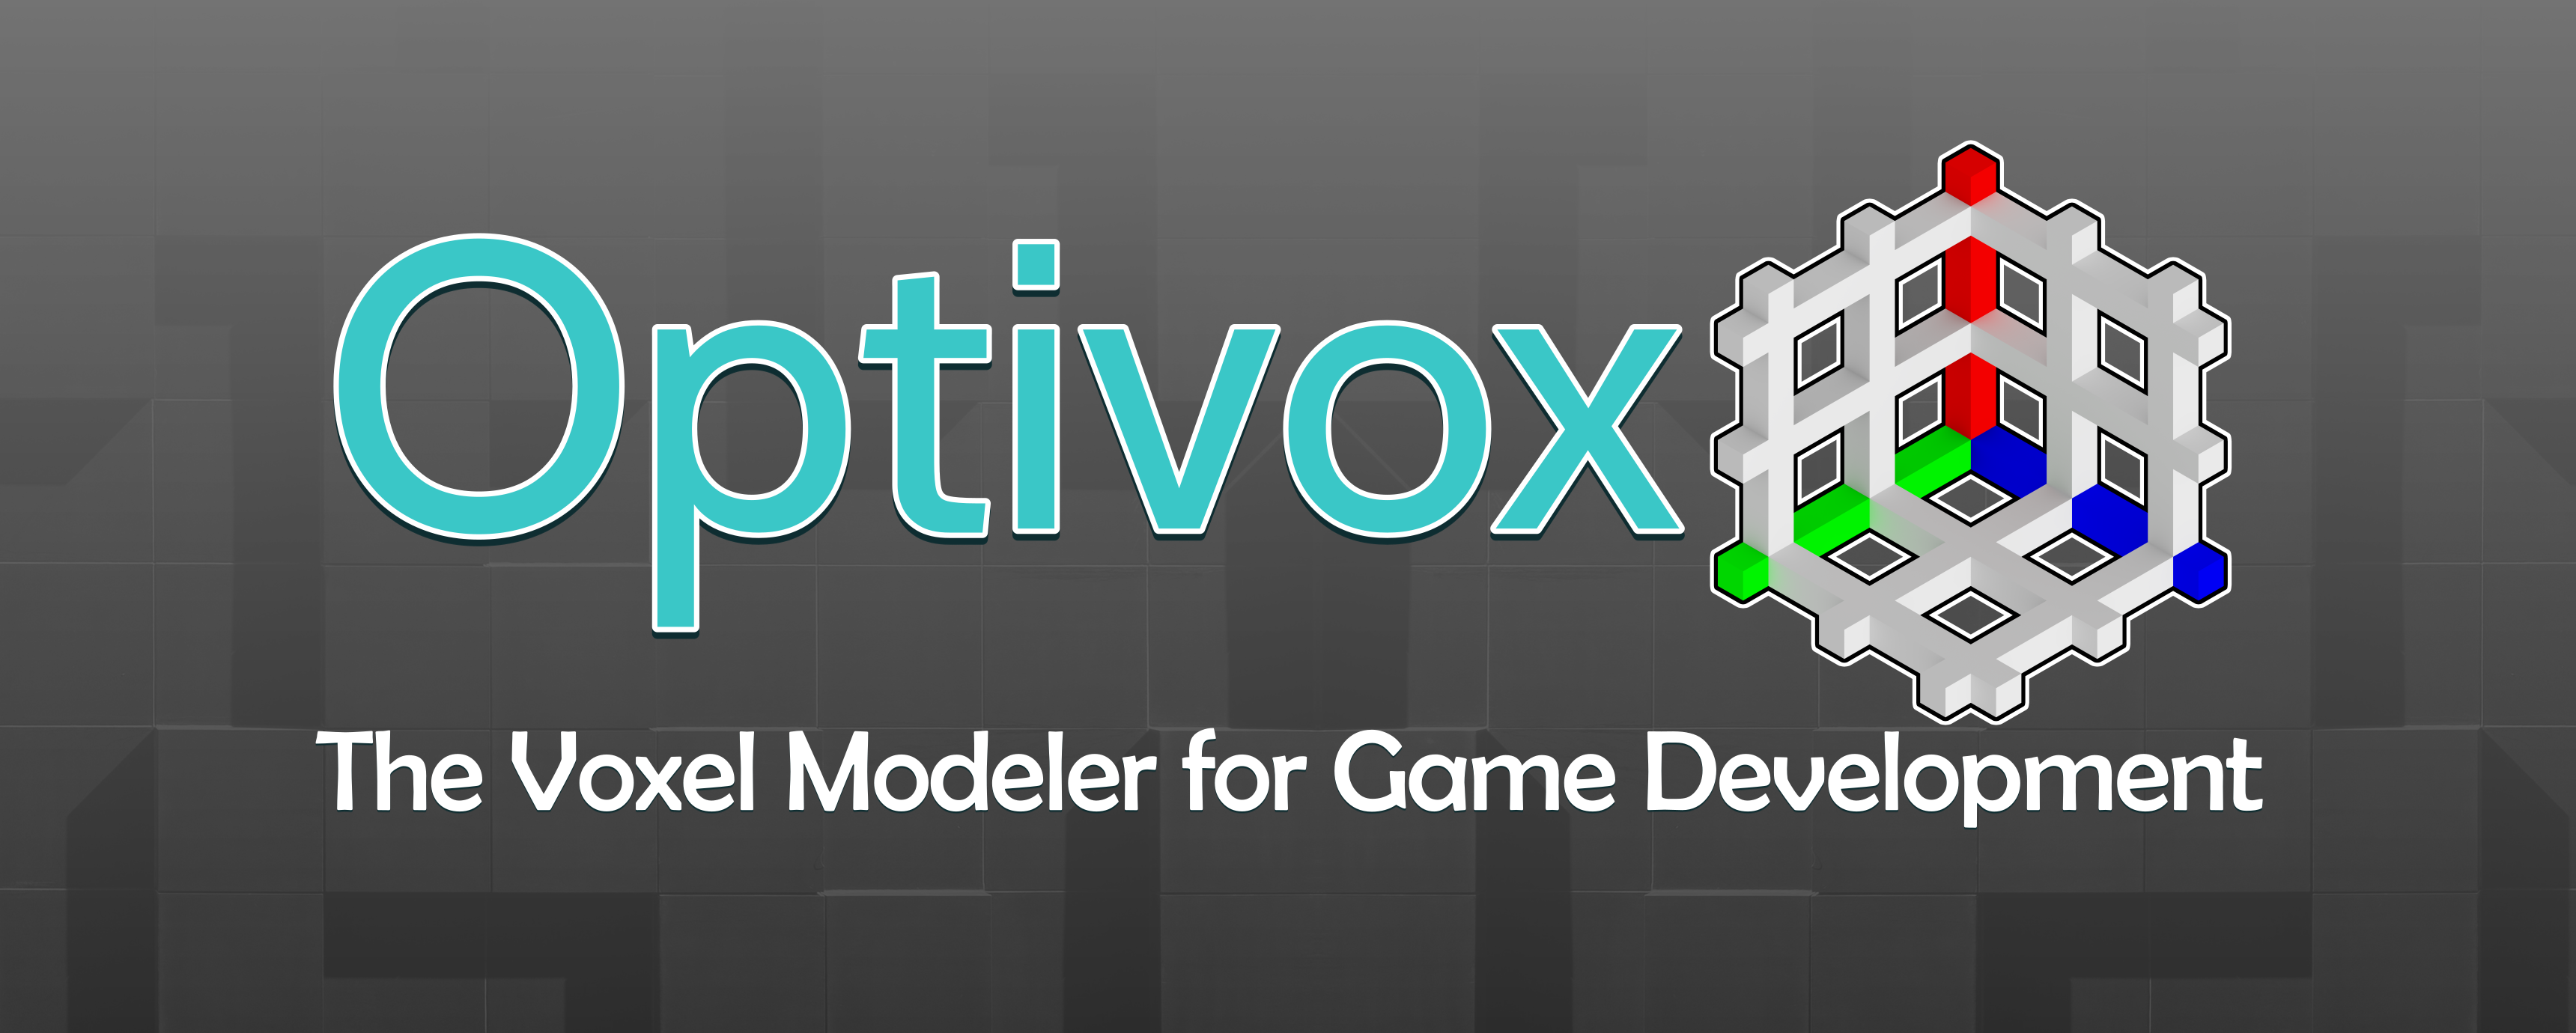 Optivox - The Voxel Modeler for Game Development